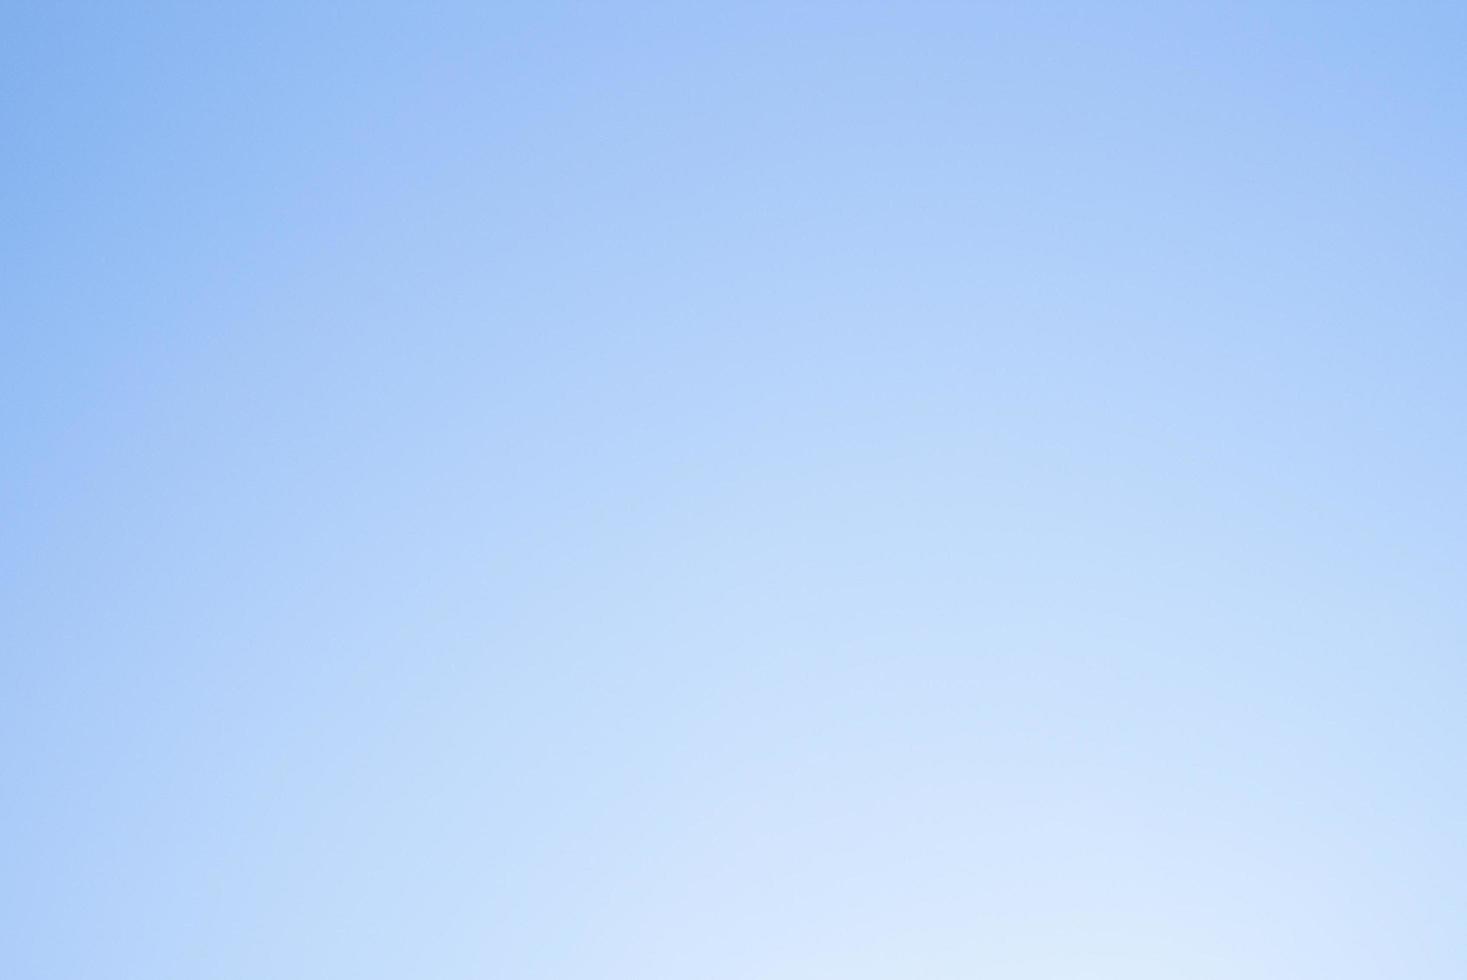 hellblauer Himmelshintergrund der Steigung. Tapeten- und Hintergrundkonzept foto